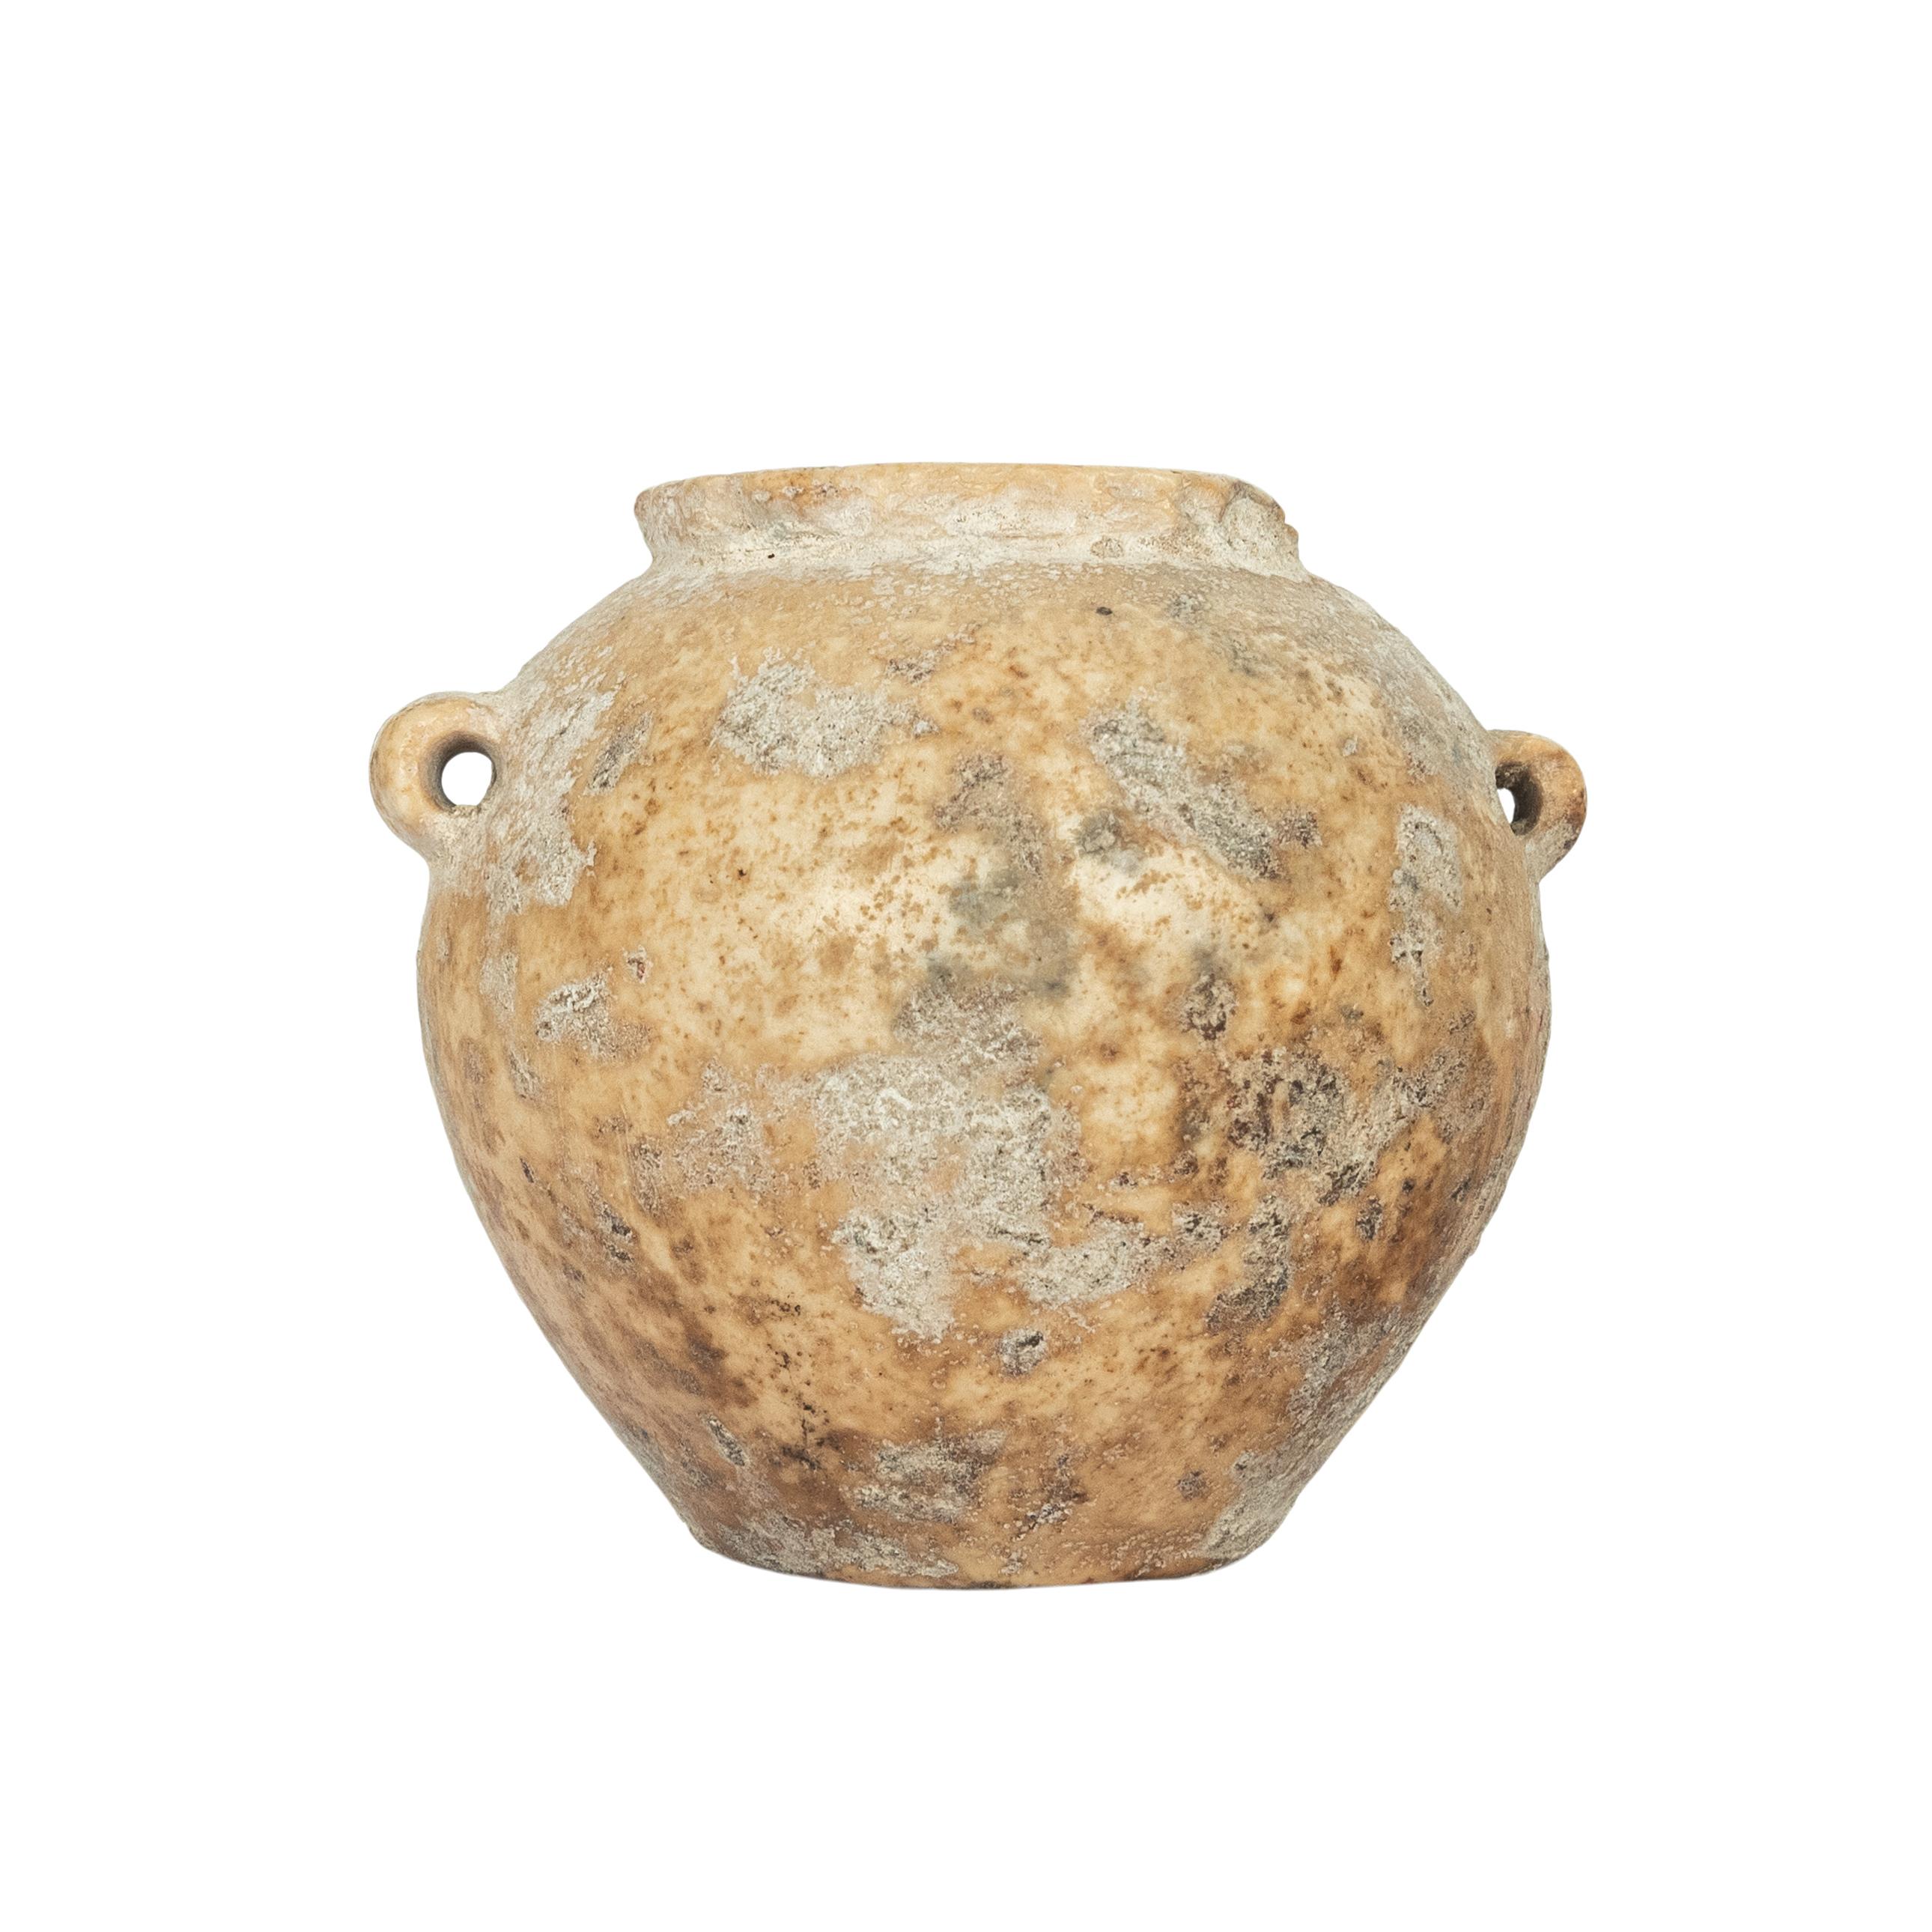 Ein altägyptisches Steingefäß/Krug, Altes Reich, 2600-2800 v. Chr.
Es handelt sich um ein originales Kalksteingefäß aus der Zeit der Pyramidenbauer. Diese Gefäße wurden von Hand mit Sand und manchmal mit rudimentären Bohrern bearbeitet. Das